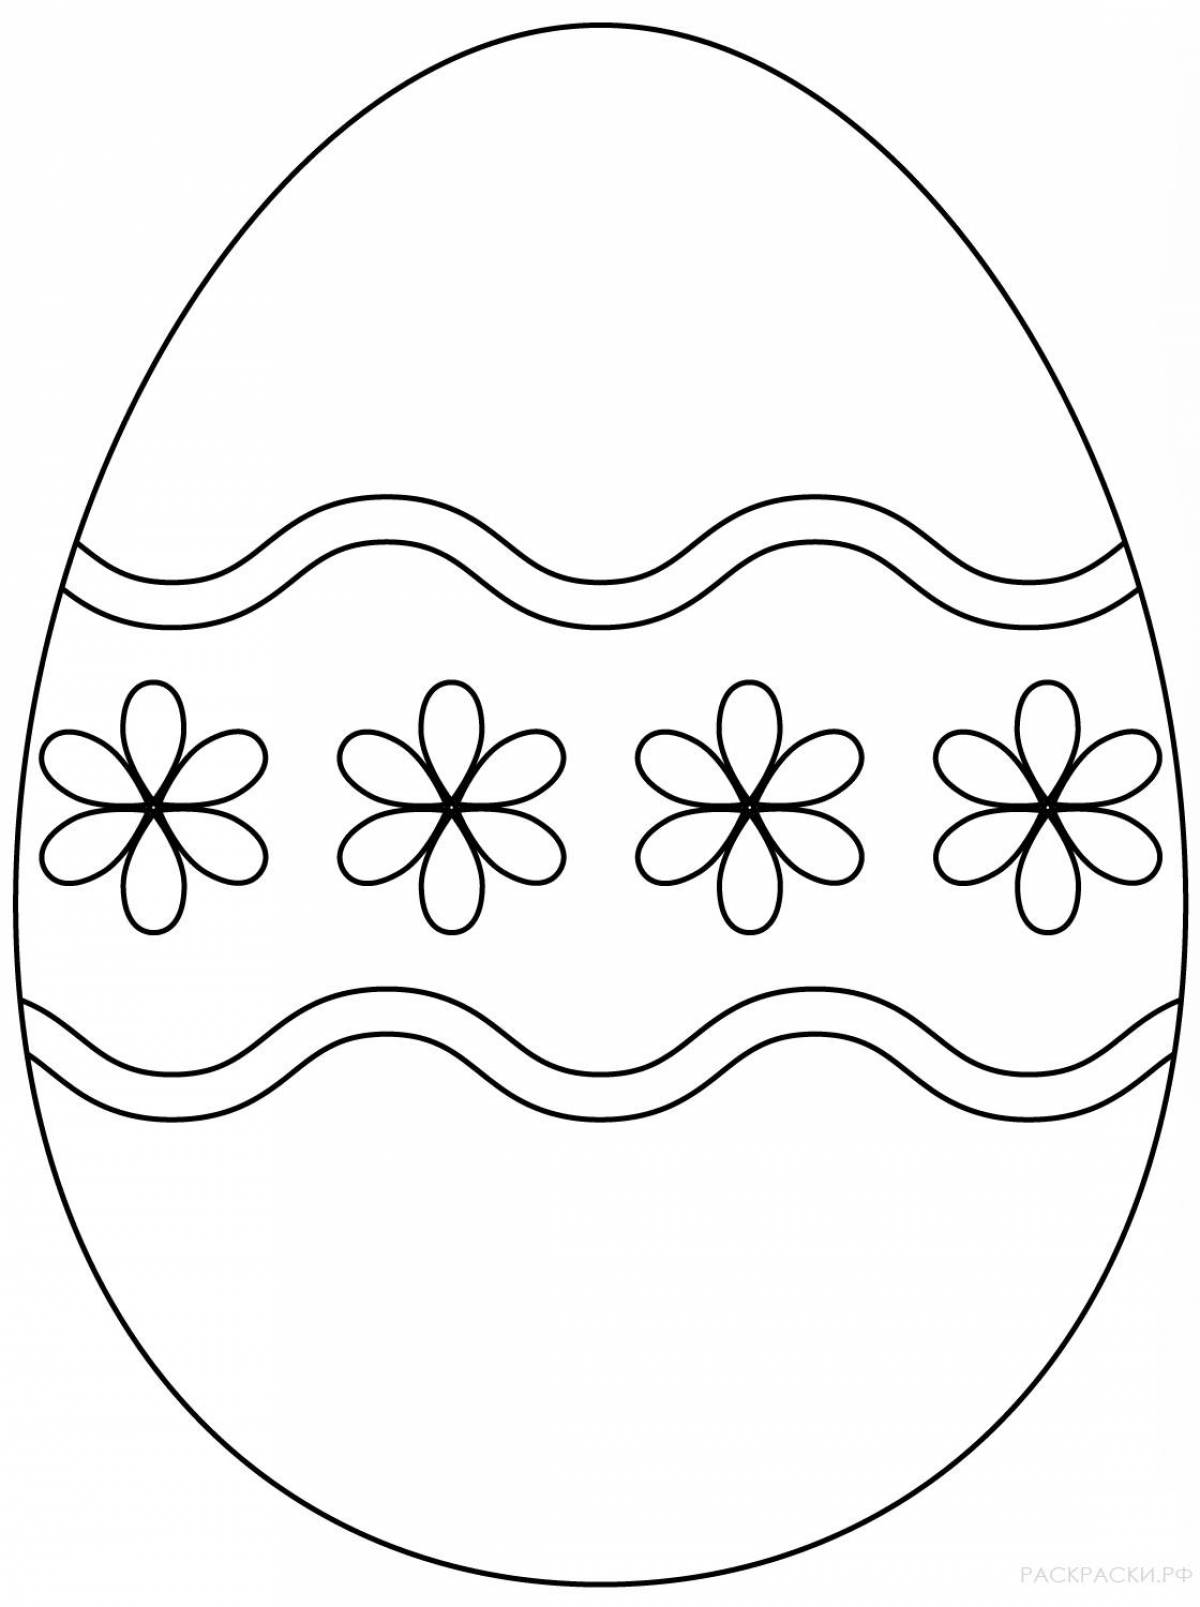 Юмористическая раскраска яйцо